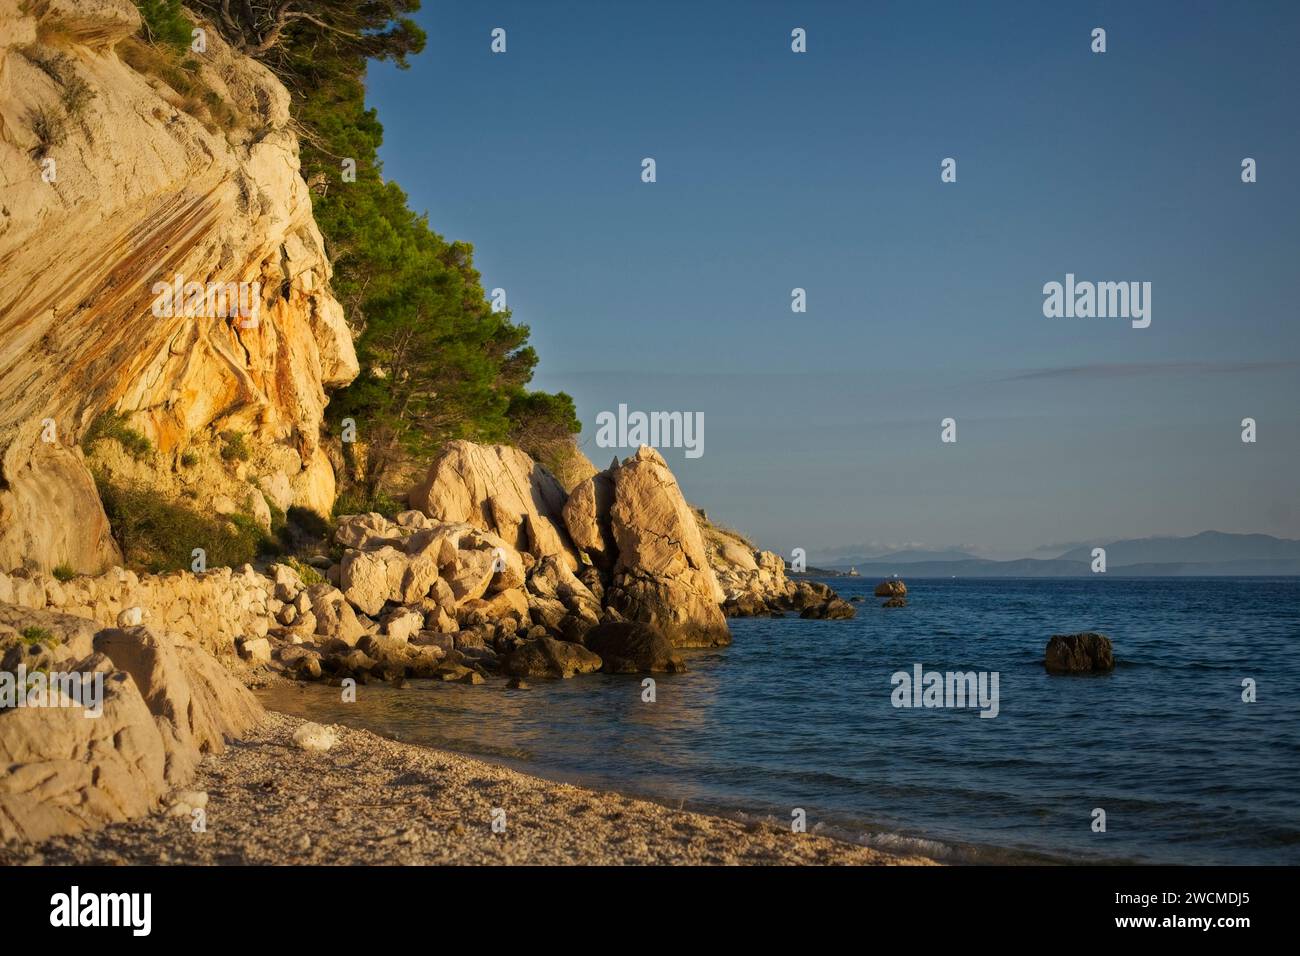 La luce del sole dorata bagna le scogliere rocciose e gli alberi di pino sulle rive acciottolate del mare Adriatico a Makarska, Croazia. Foto Stock